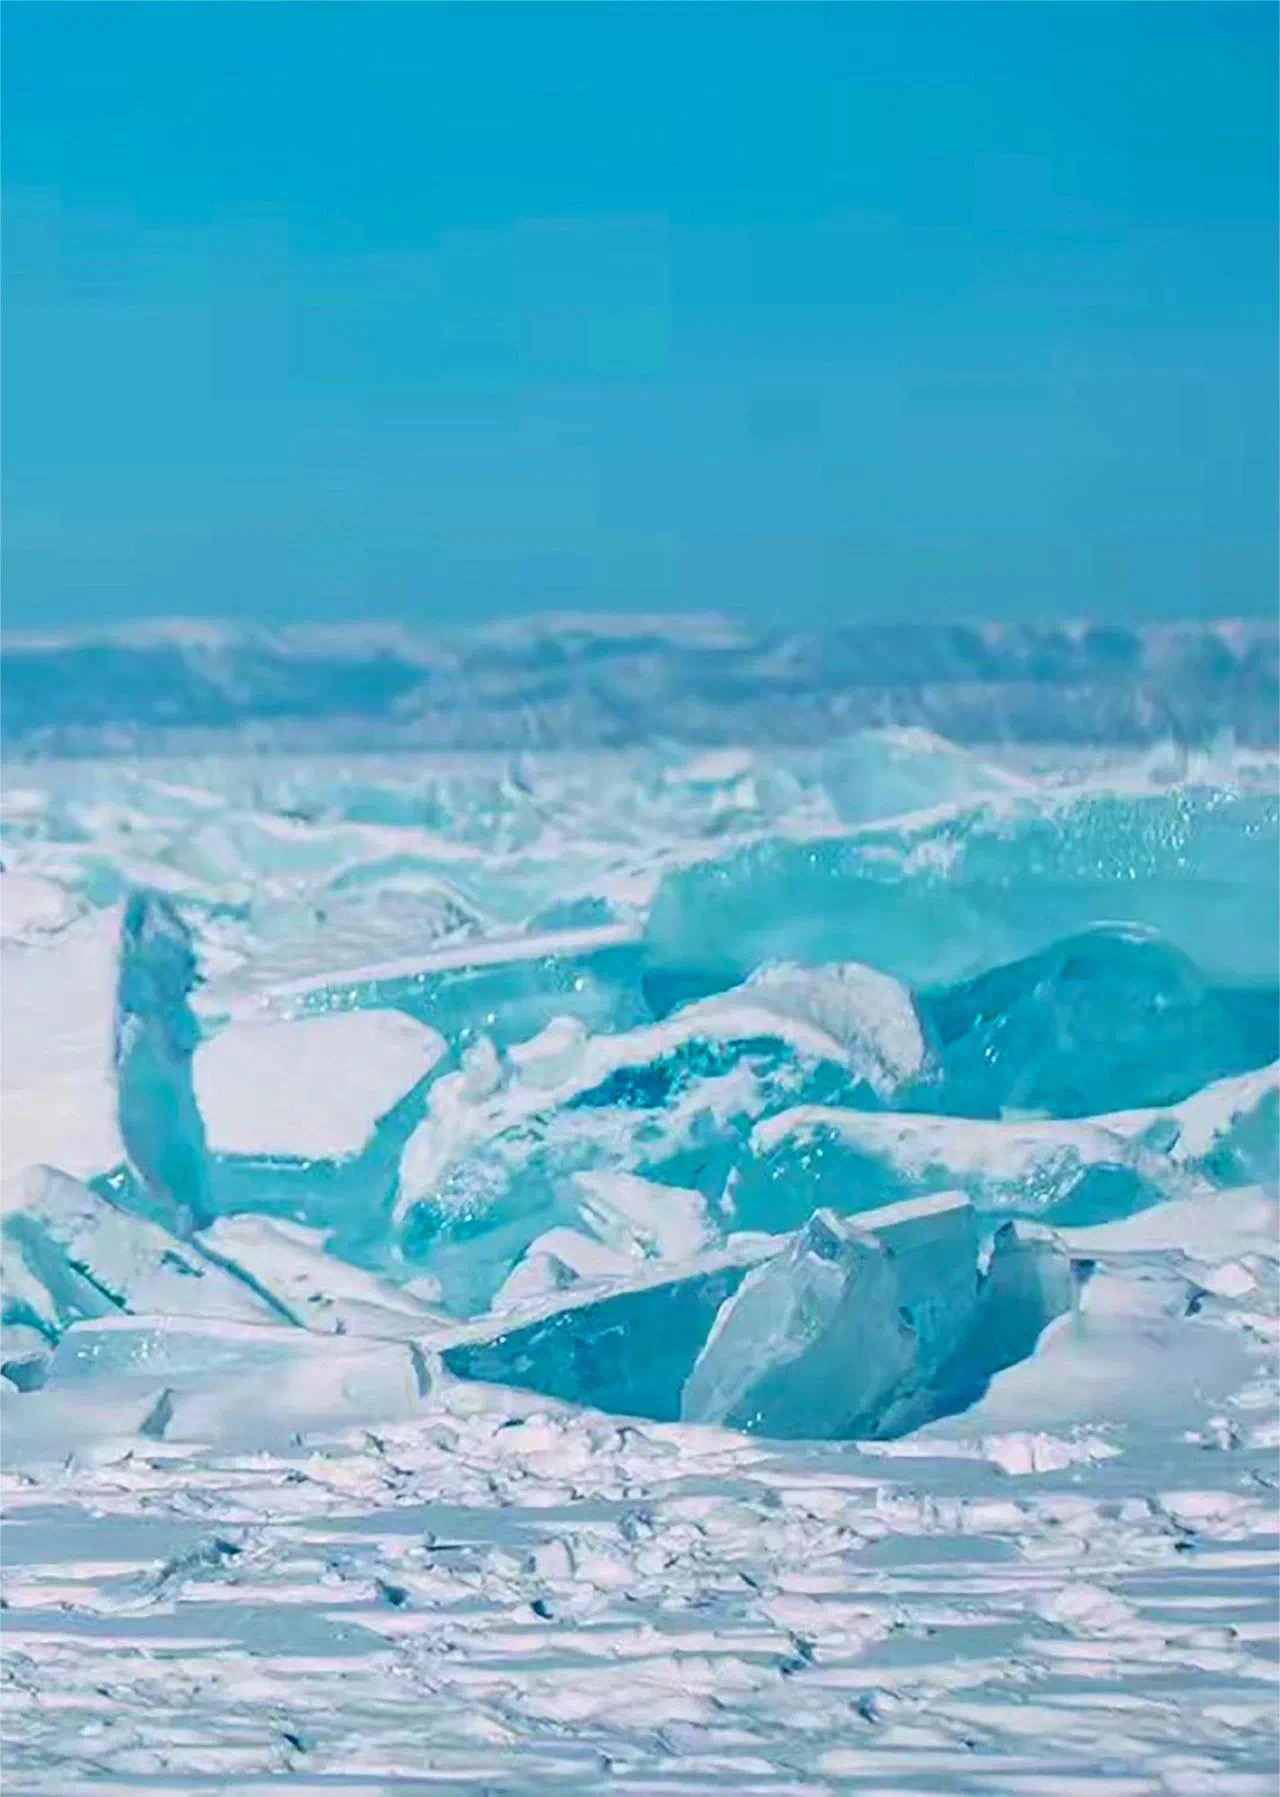 当冰封的贝加尔湖成为一片银装素裹的冰雪世界时，它呈现出令人叹为观止的壮丽景象。  **详细攻略：**